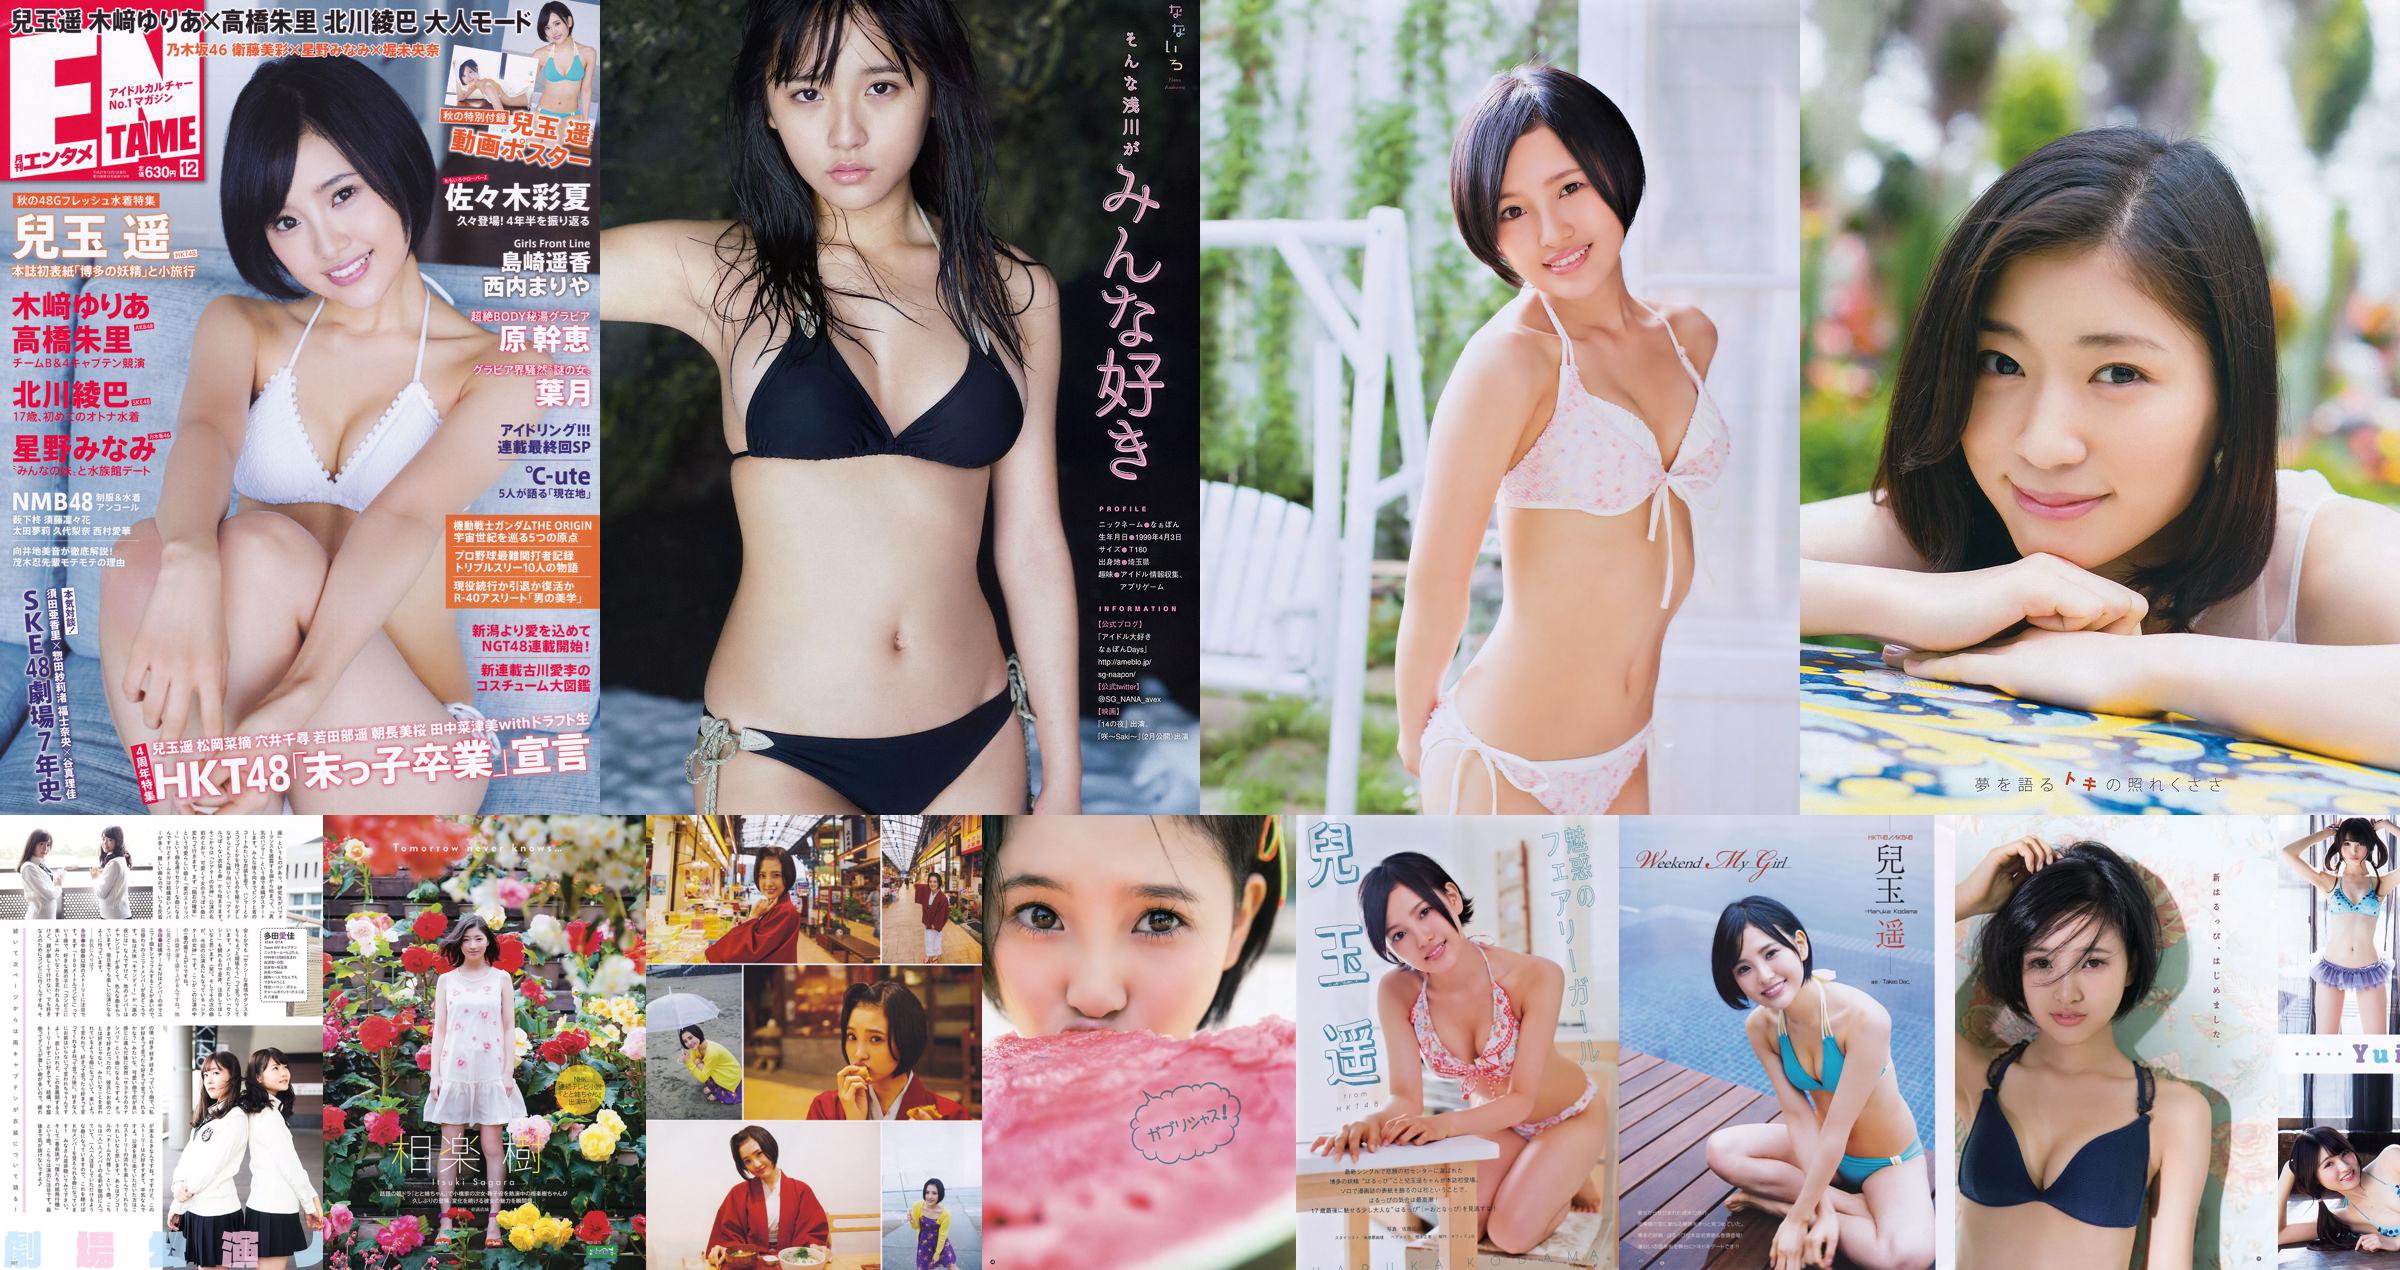 [Young Gangan] Haruka Kodama Saki Takeda 2015 No.12 Photo Palet No.5c9cf6 หน้า 1